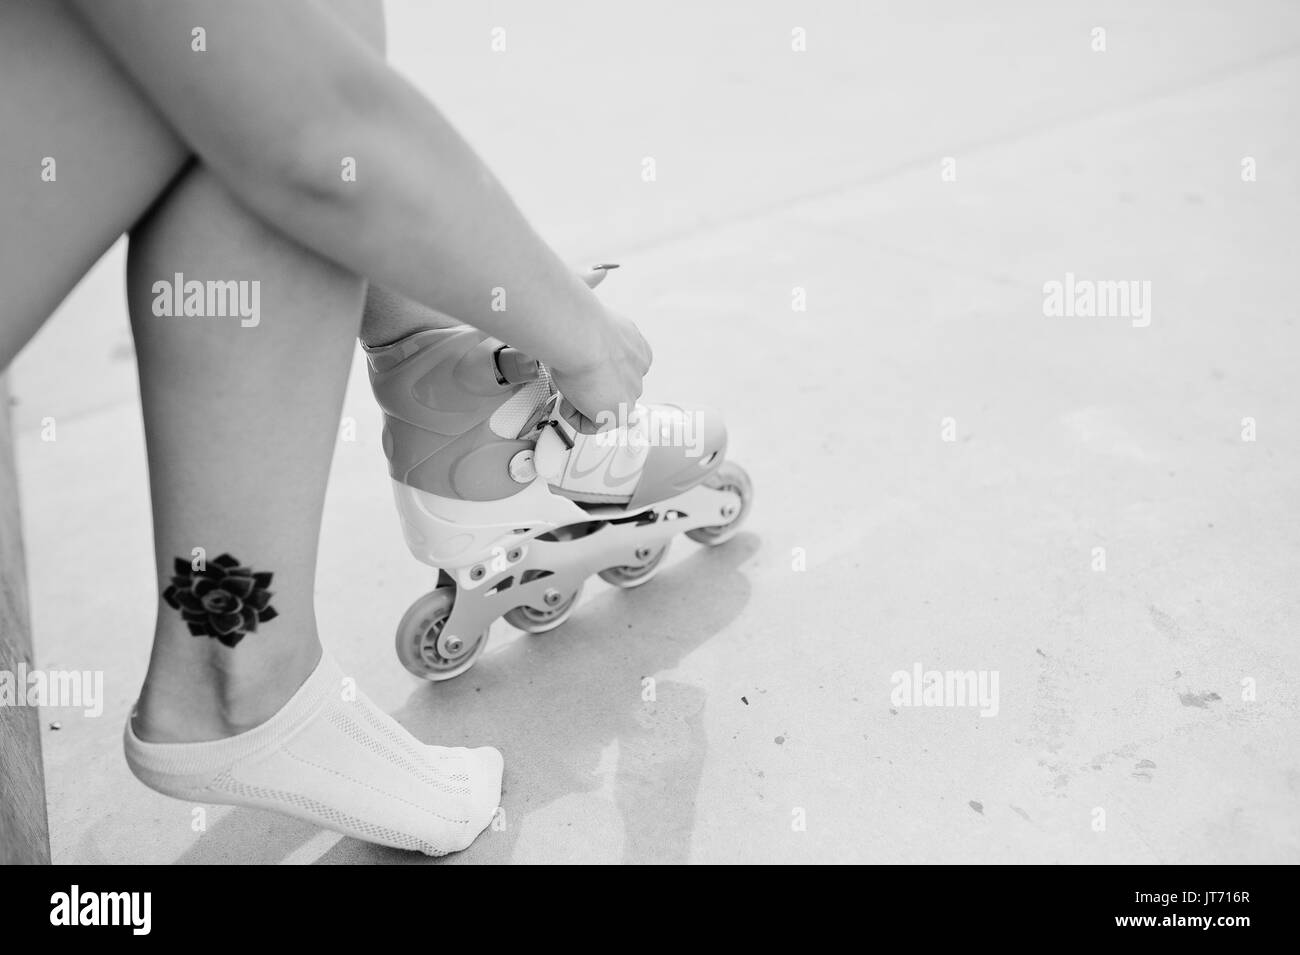 Giovane donna mettendo su pattini esterni. Foto in bianco e nero. Foto Stock